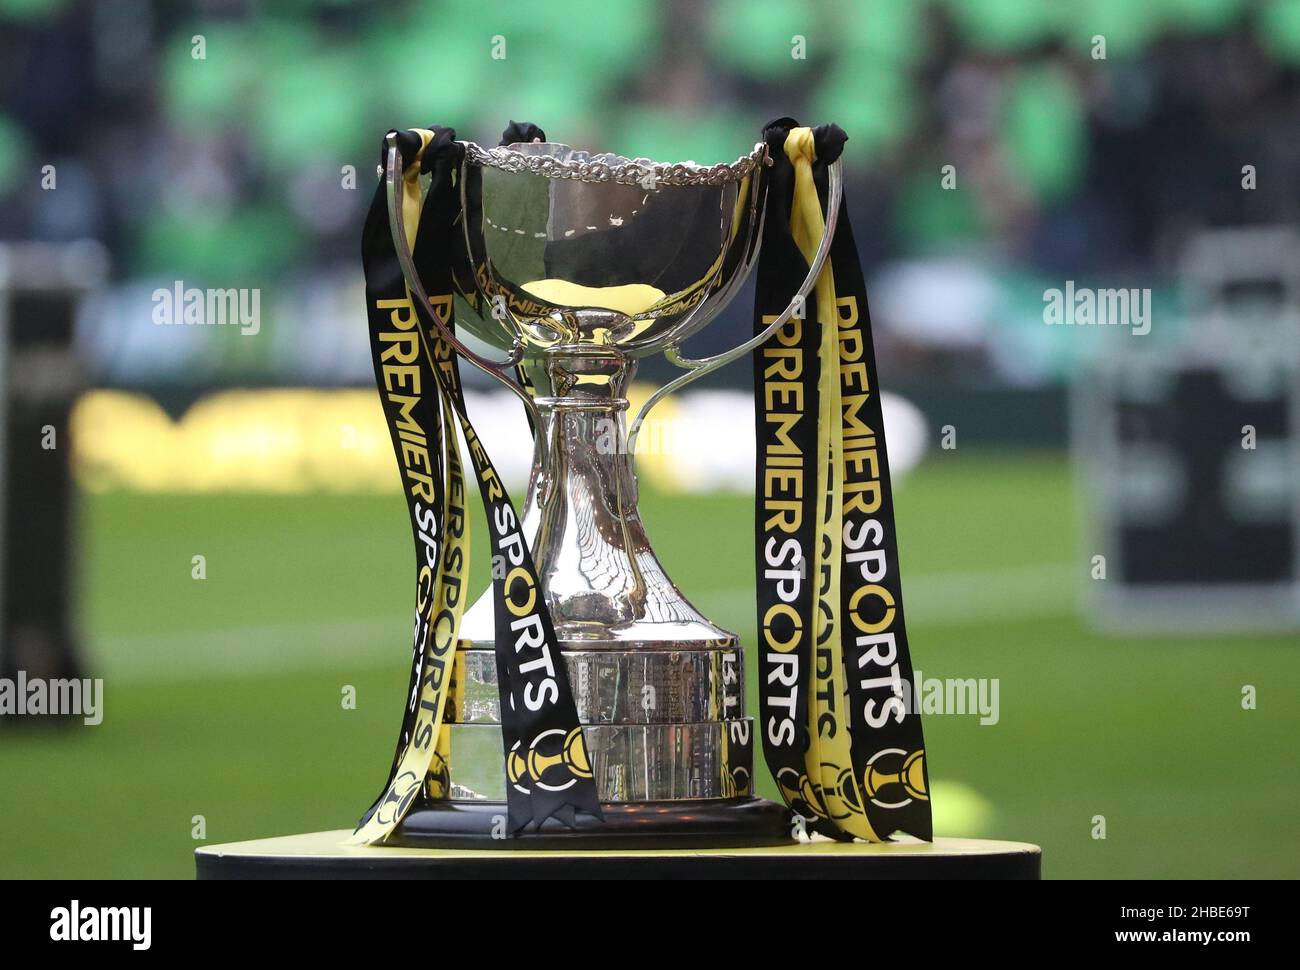 Fútbol - Final de la Copa de la Liga Escocesa - Hibernian contra Celtic -  Hampden Park, Glasgow, Escocia,